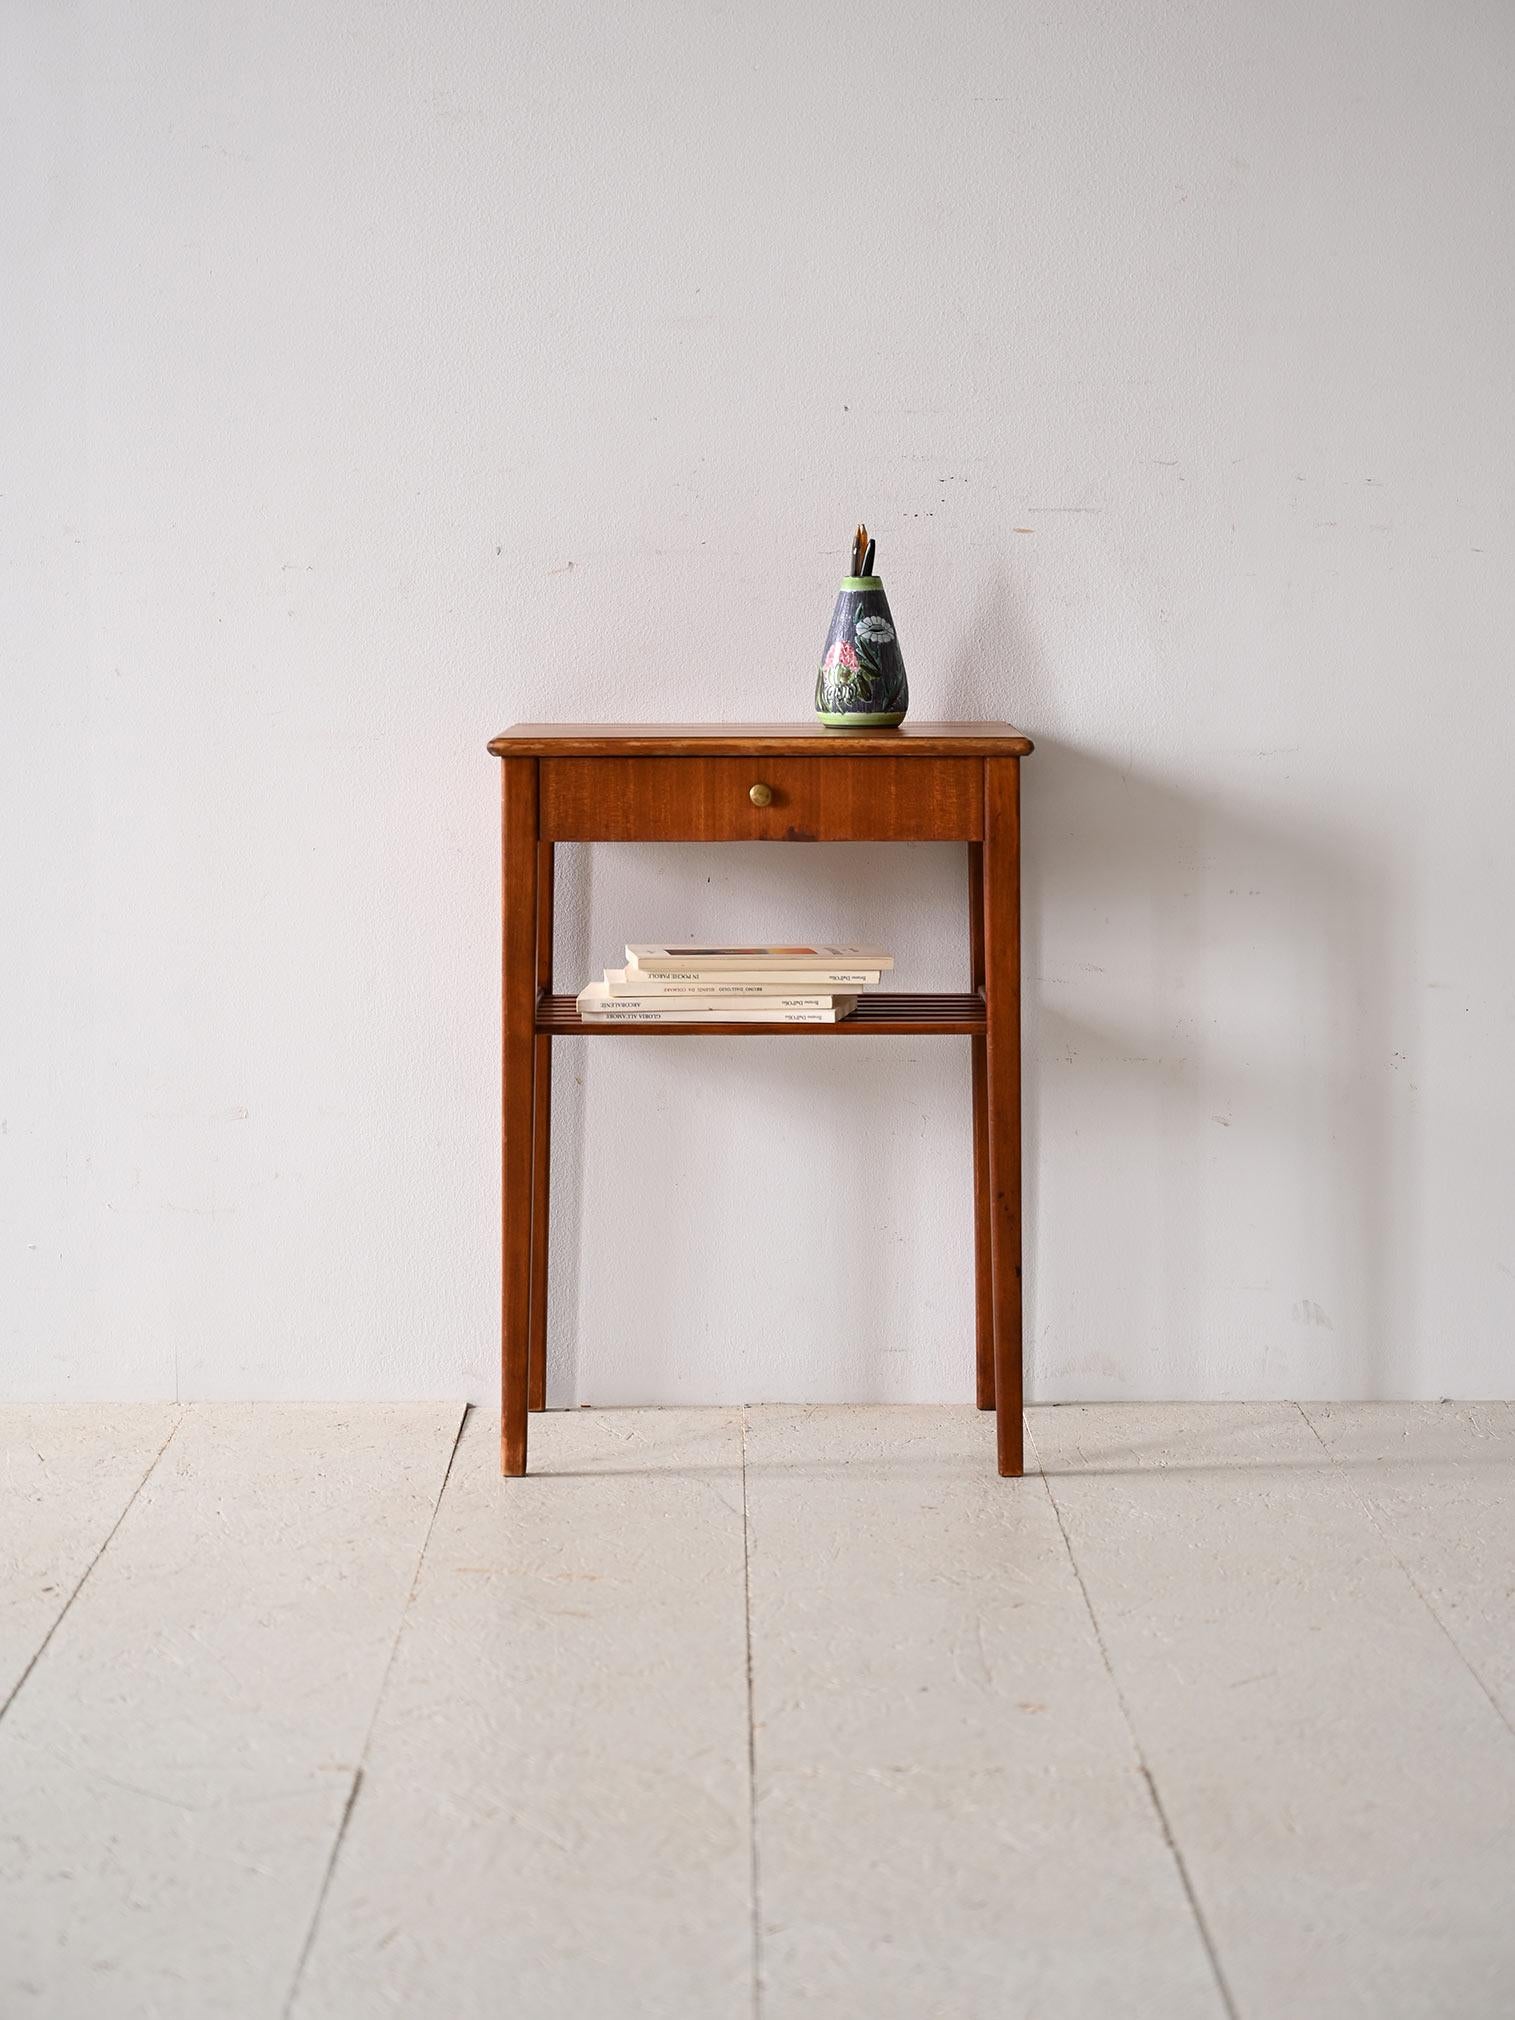 Table basse scandinave des années 1960 avec tiroir.

Un meuble au goût classique et aux lignes modernes qui rappelle le style scandinave du milieu du siècle.
La couleur vive du bois d'acajou s'accorde parfaitement avec le bouton en métal doré du